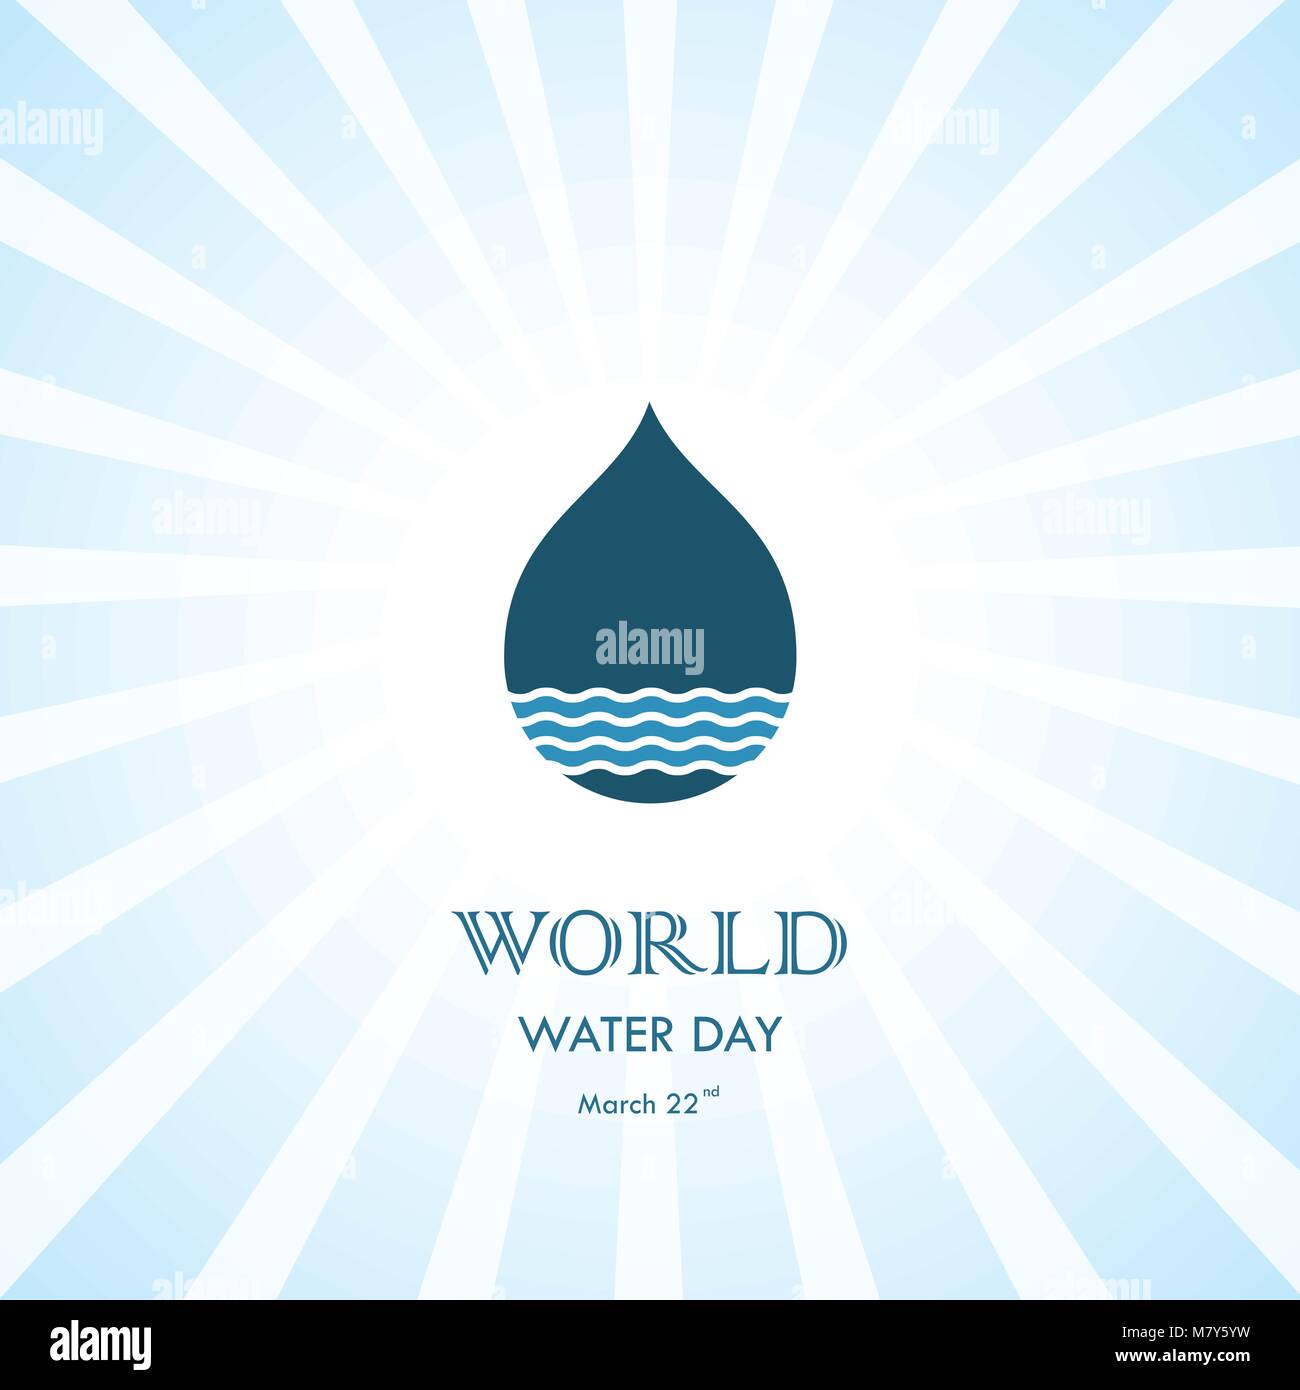 Gota de agua con ondas de agua icon vector logo design template.Icon.Día Mundial del Agua el Día Mundial del Agua idea de campaña de carteles y tarjetas de felicitación.Vector il Ilustración del Vector